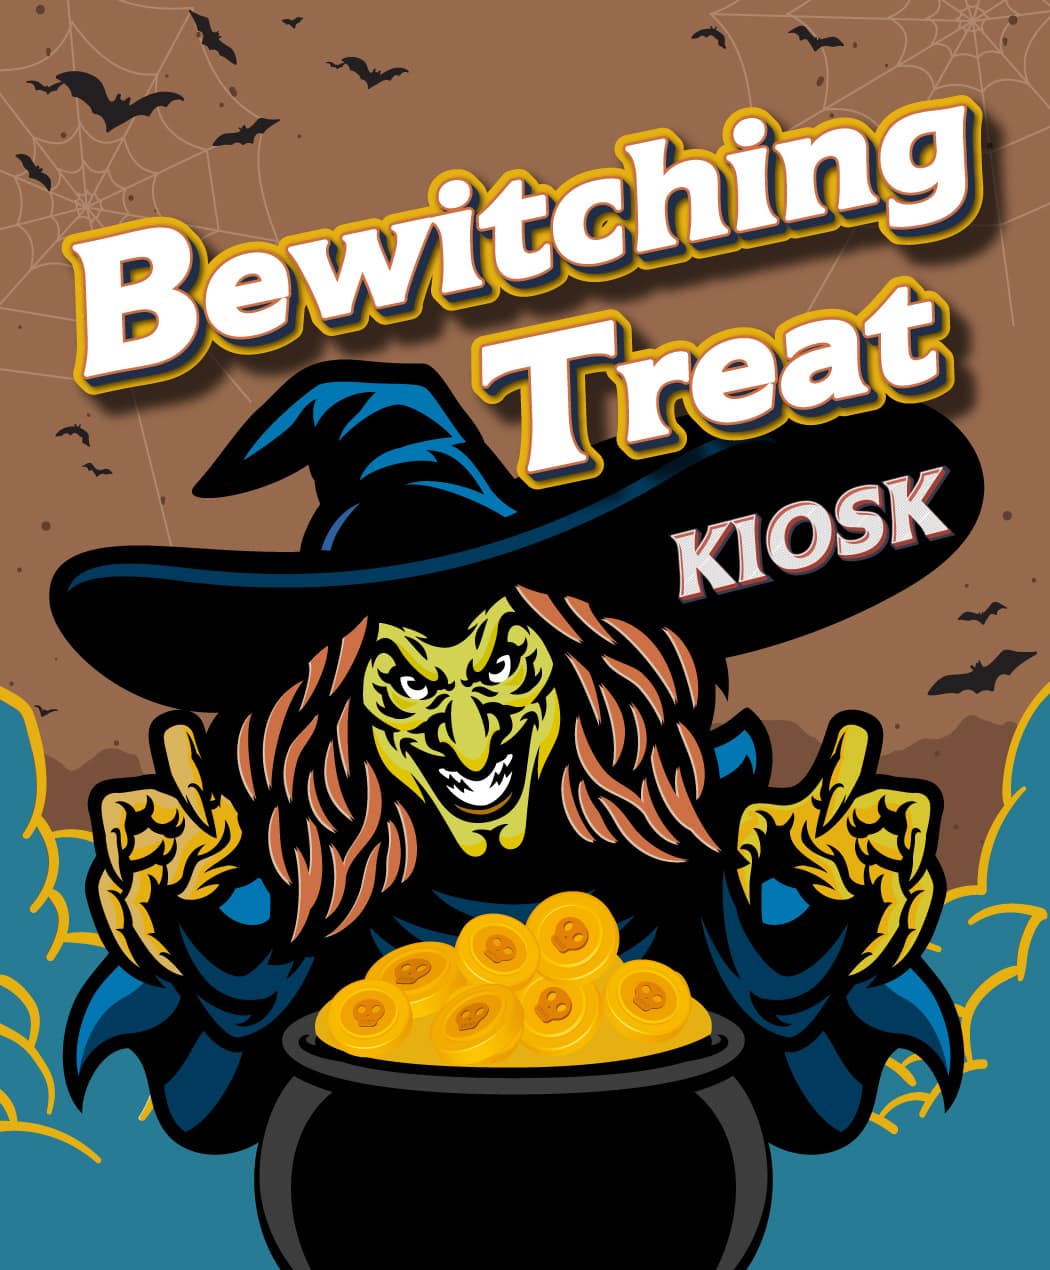 Bewitching Treat Kiosk